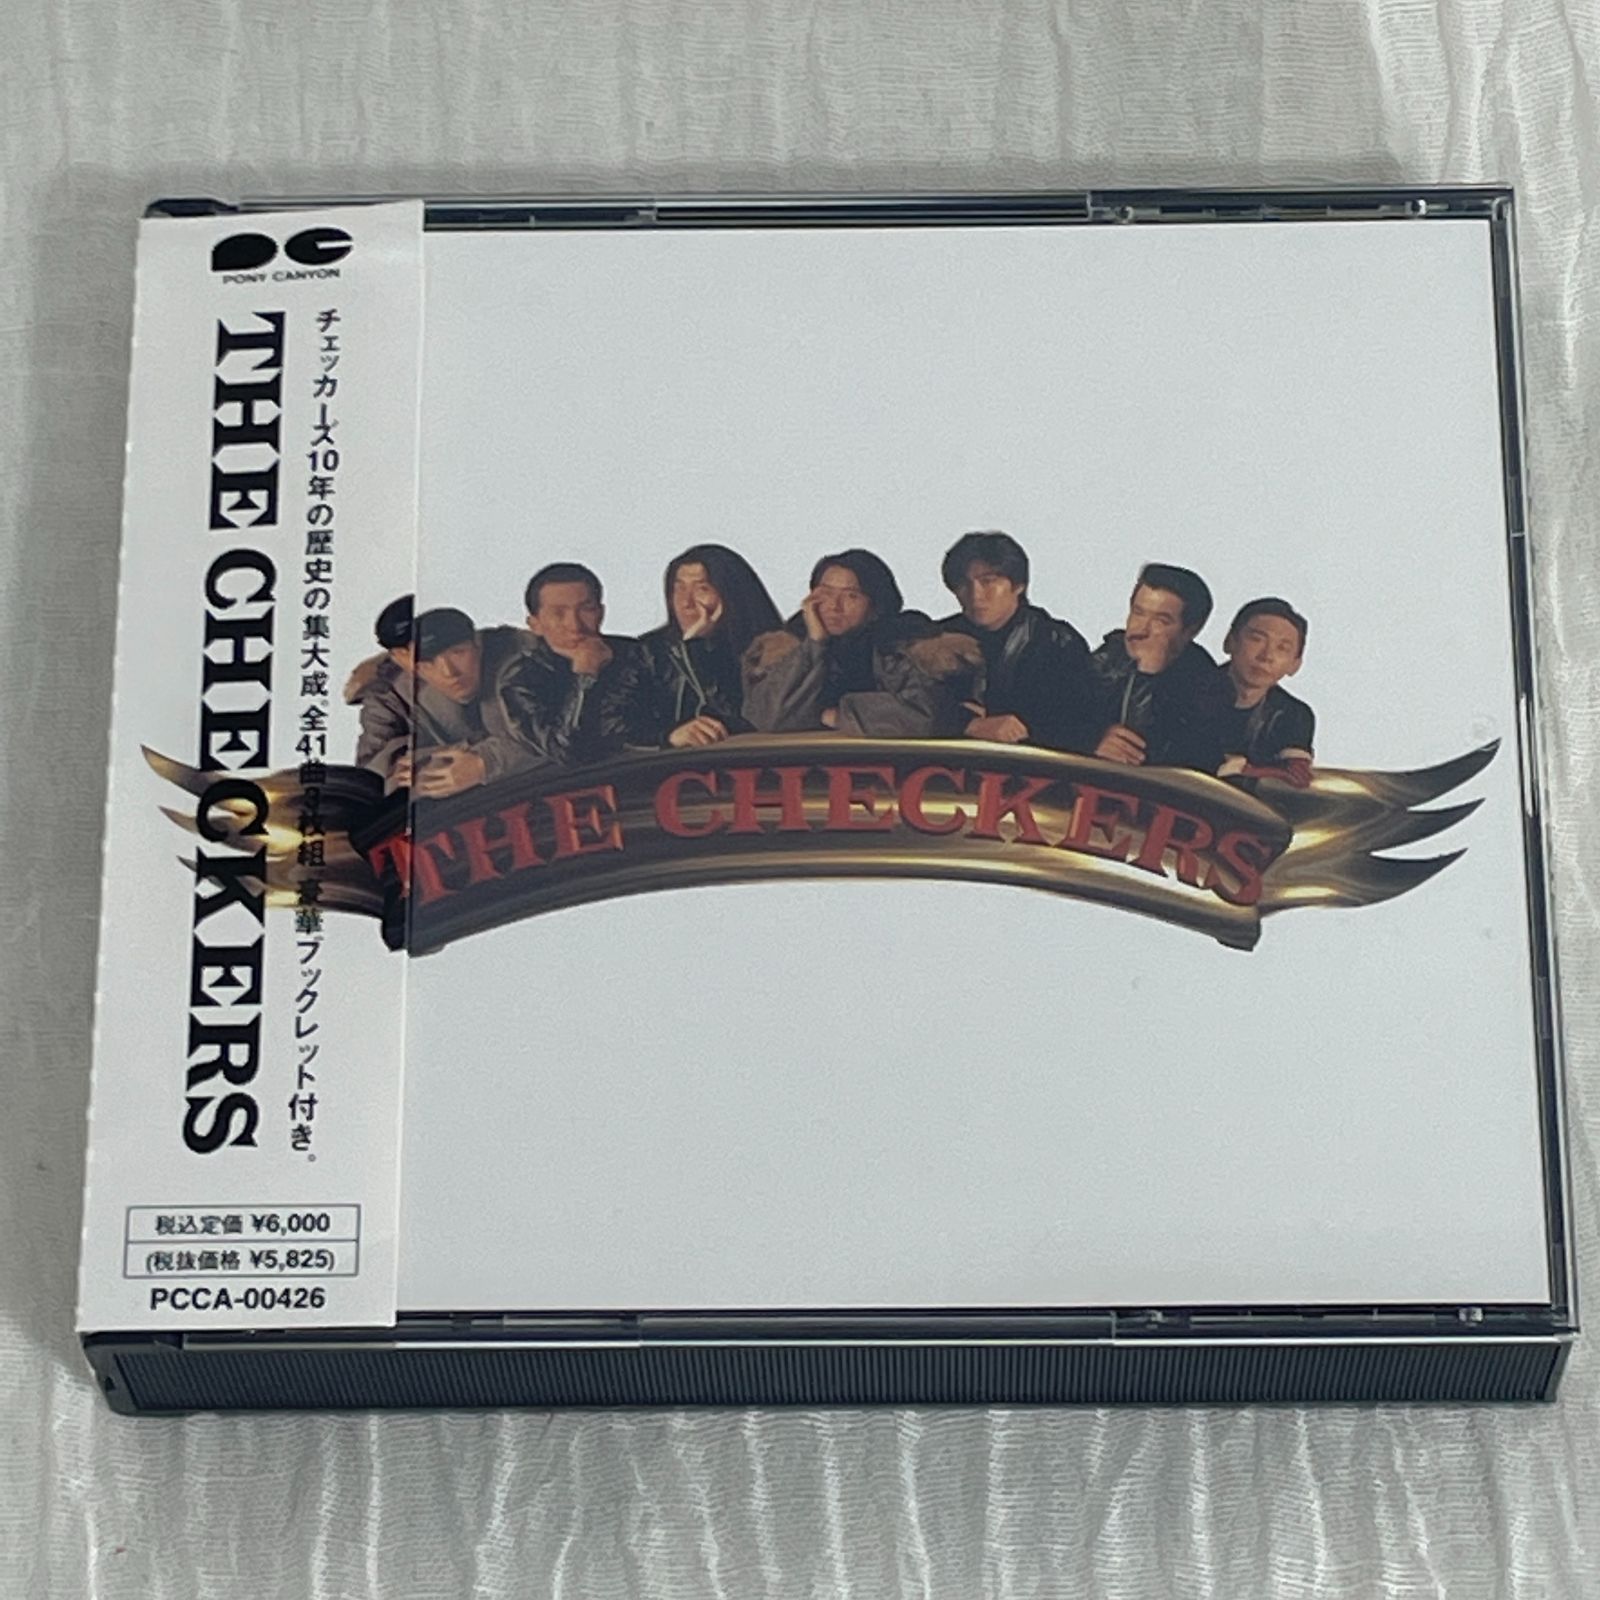 チェッカーズザ・ベスト2枚組CDアルバム - 邦楽